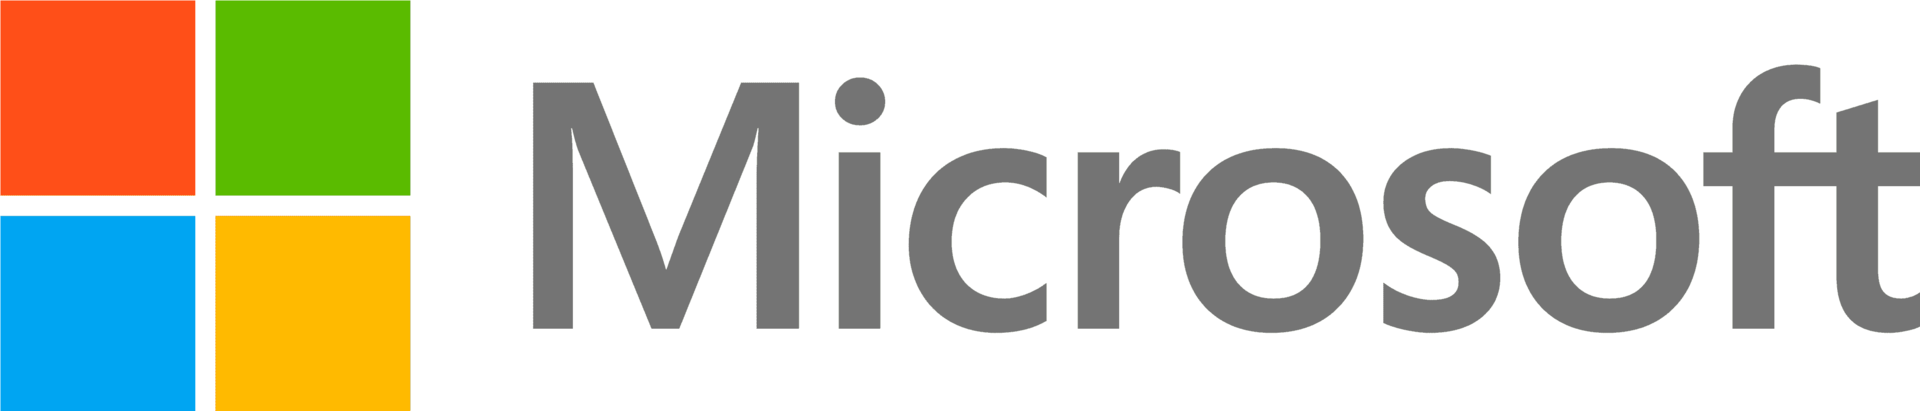 Microsoft DG7GMGF0D7CX.0002 Software-Lizenz/-Upgrade 1 Lizenz(en) (DG7GMGF0D7CX.0002)